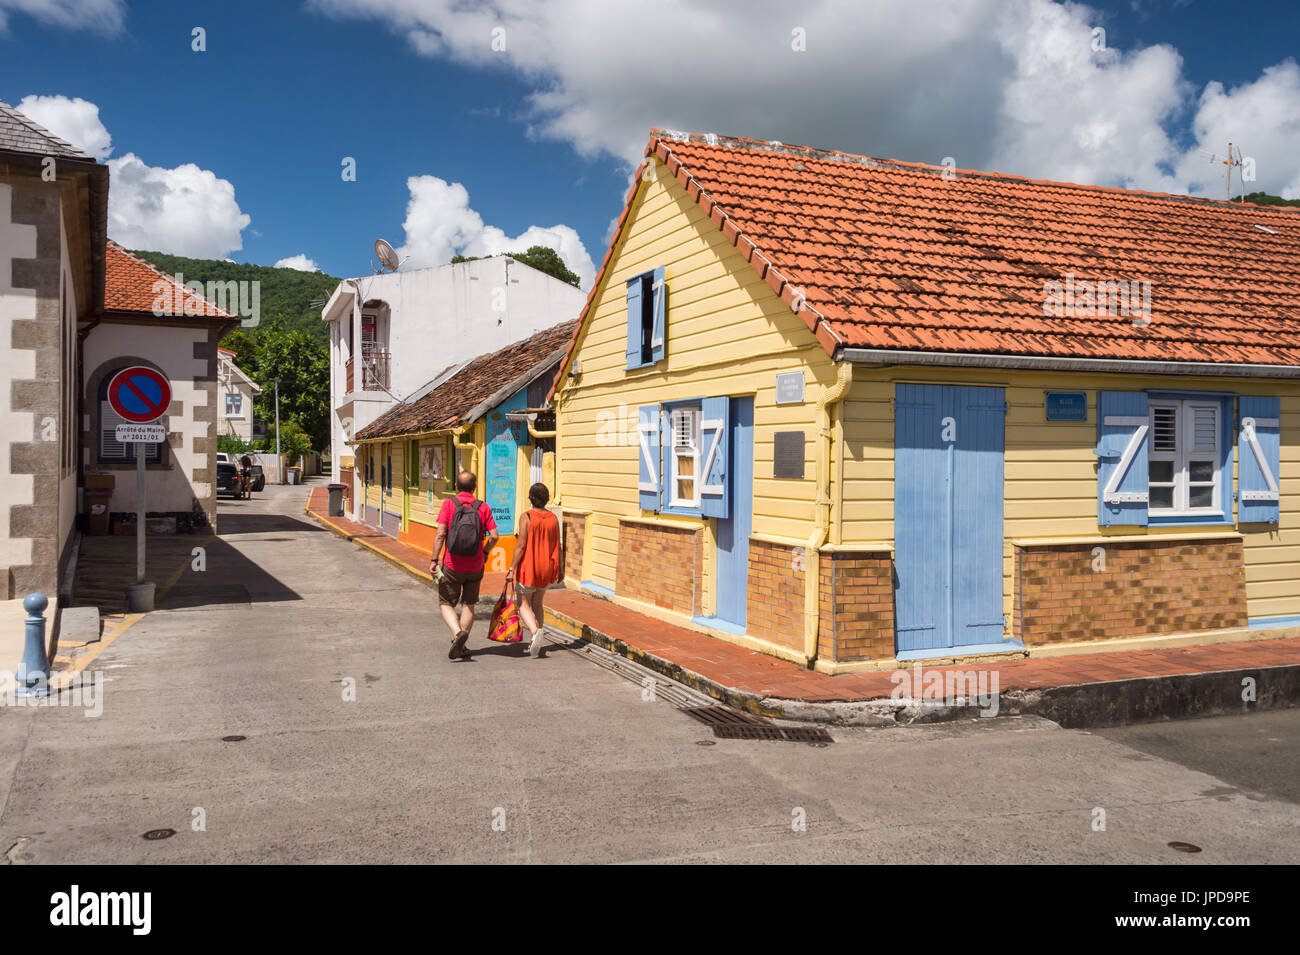 Maison colorée à Petite Anse d'Arlet en Martinique (mer des Caraïbes) Banque D'Images